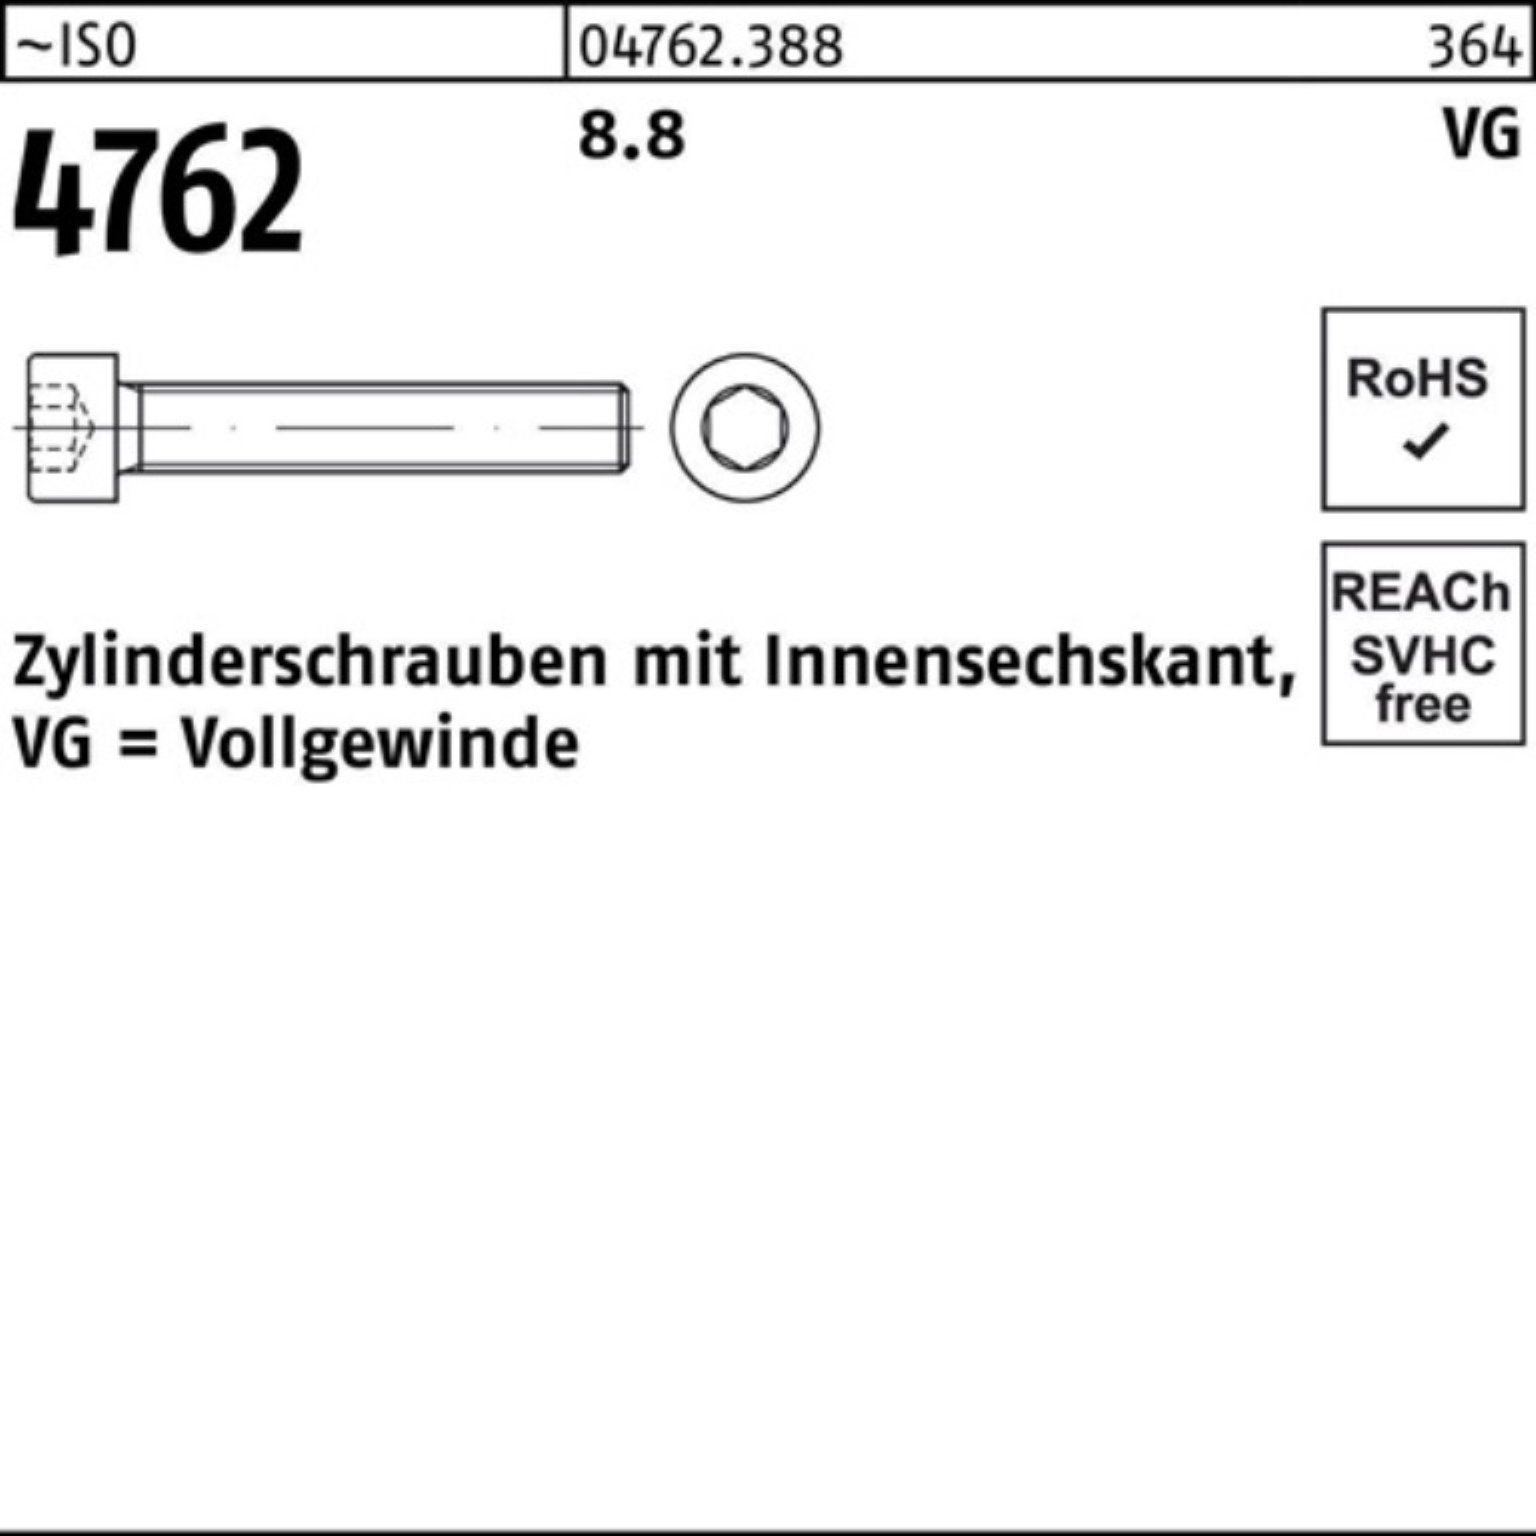 200 Reyher Zylinderschraube Pack ISO VG 200er Stüc Innen-6kt M6x 8.8 4762 40 Zylinderschraube